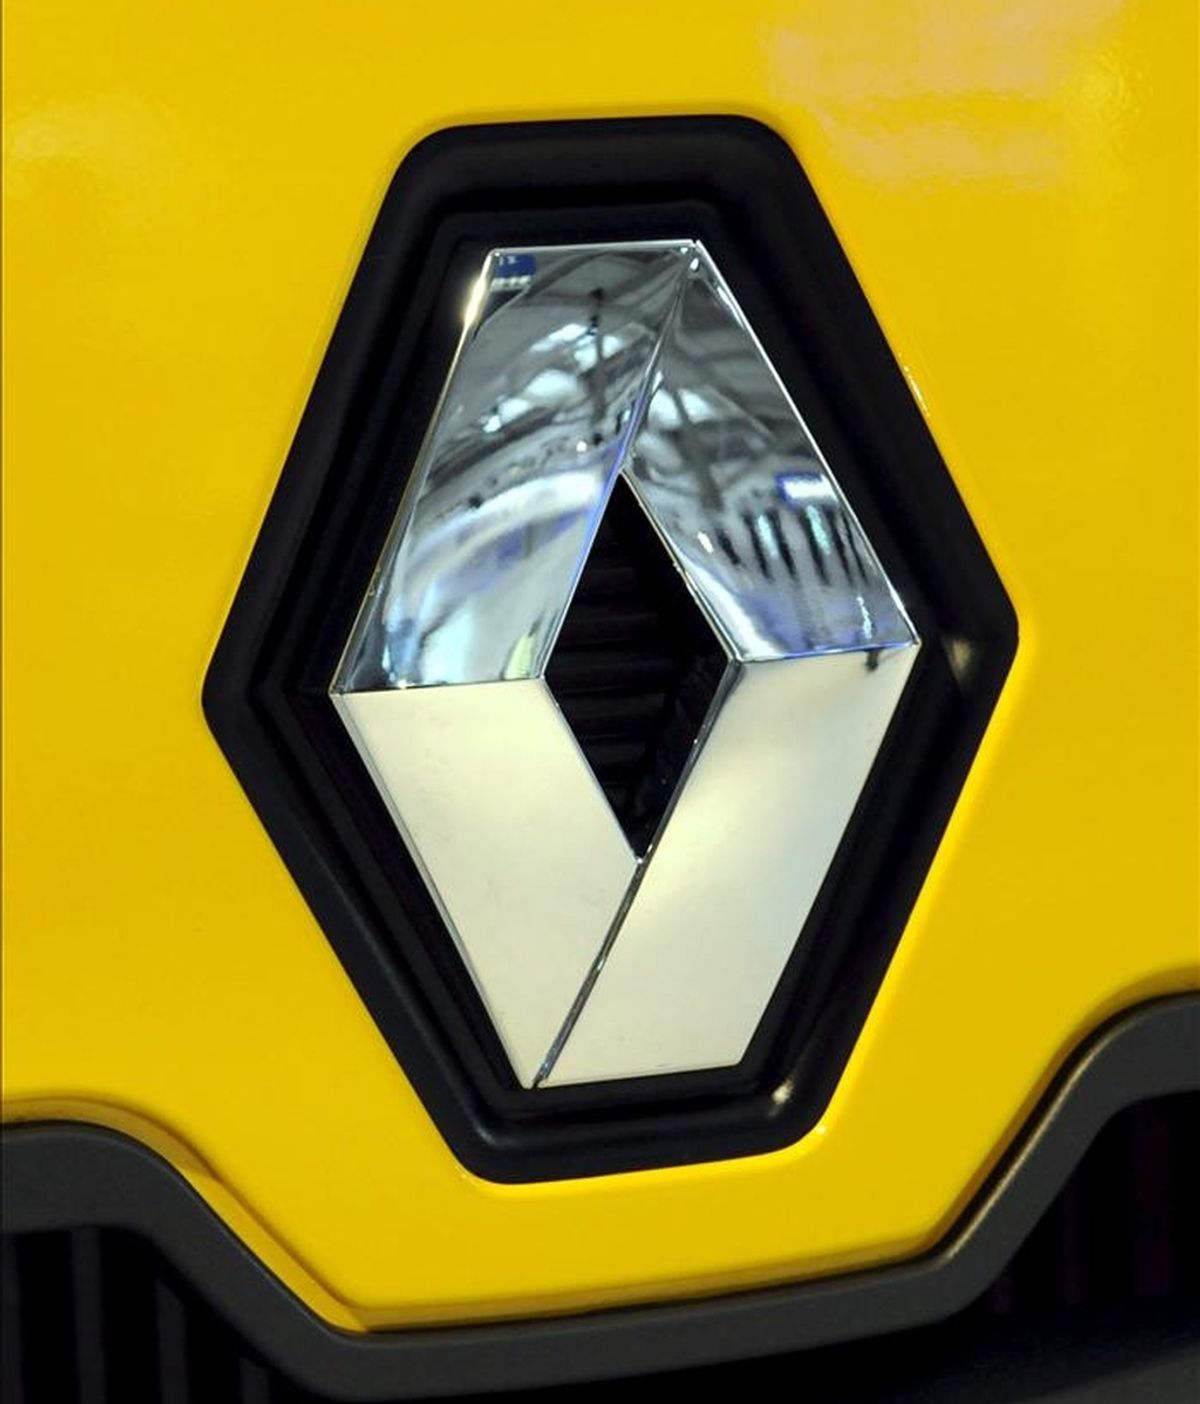 El fabricante automovilístico francés Renault presentó hoy una denuncia ante la Justicia gala por "espionaje industrial, corrupción, abuso de confianza, robo y encubrimiento cometidos en banda organizada". EFE/Archivo